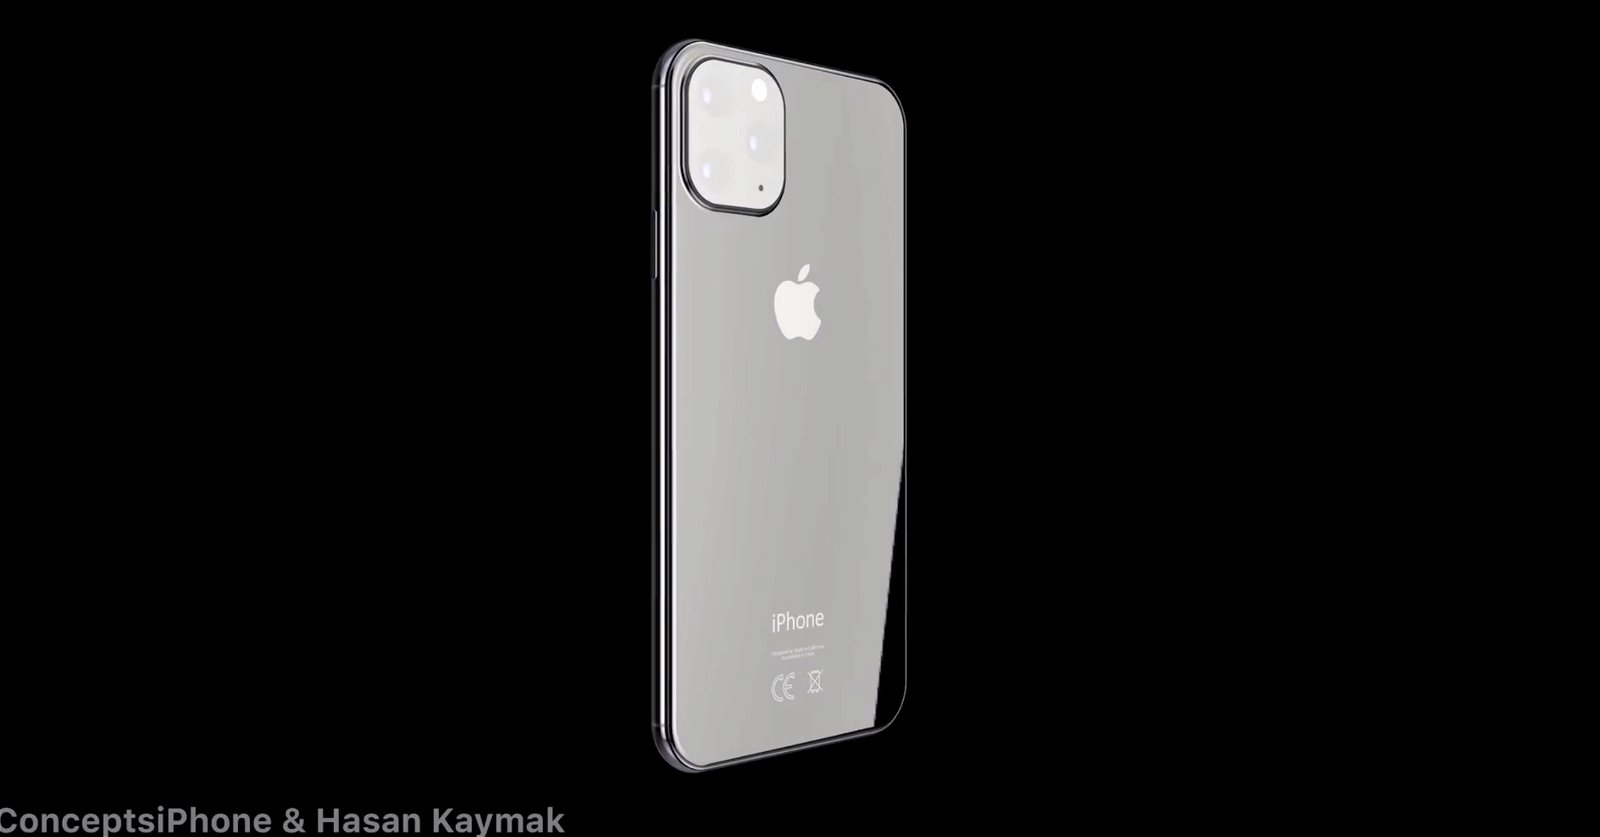 Todos critican la cámara del iPhone XI, como criticaron la del iPhone X o el iPhone 4